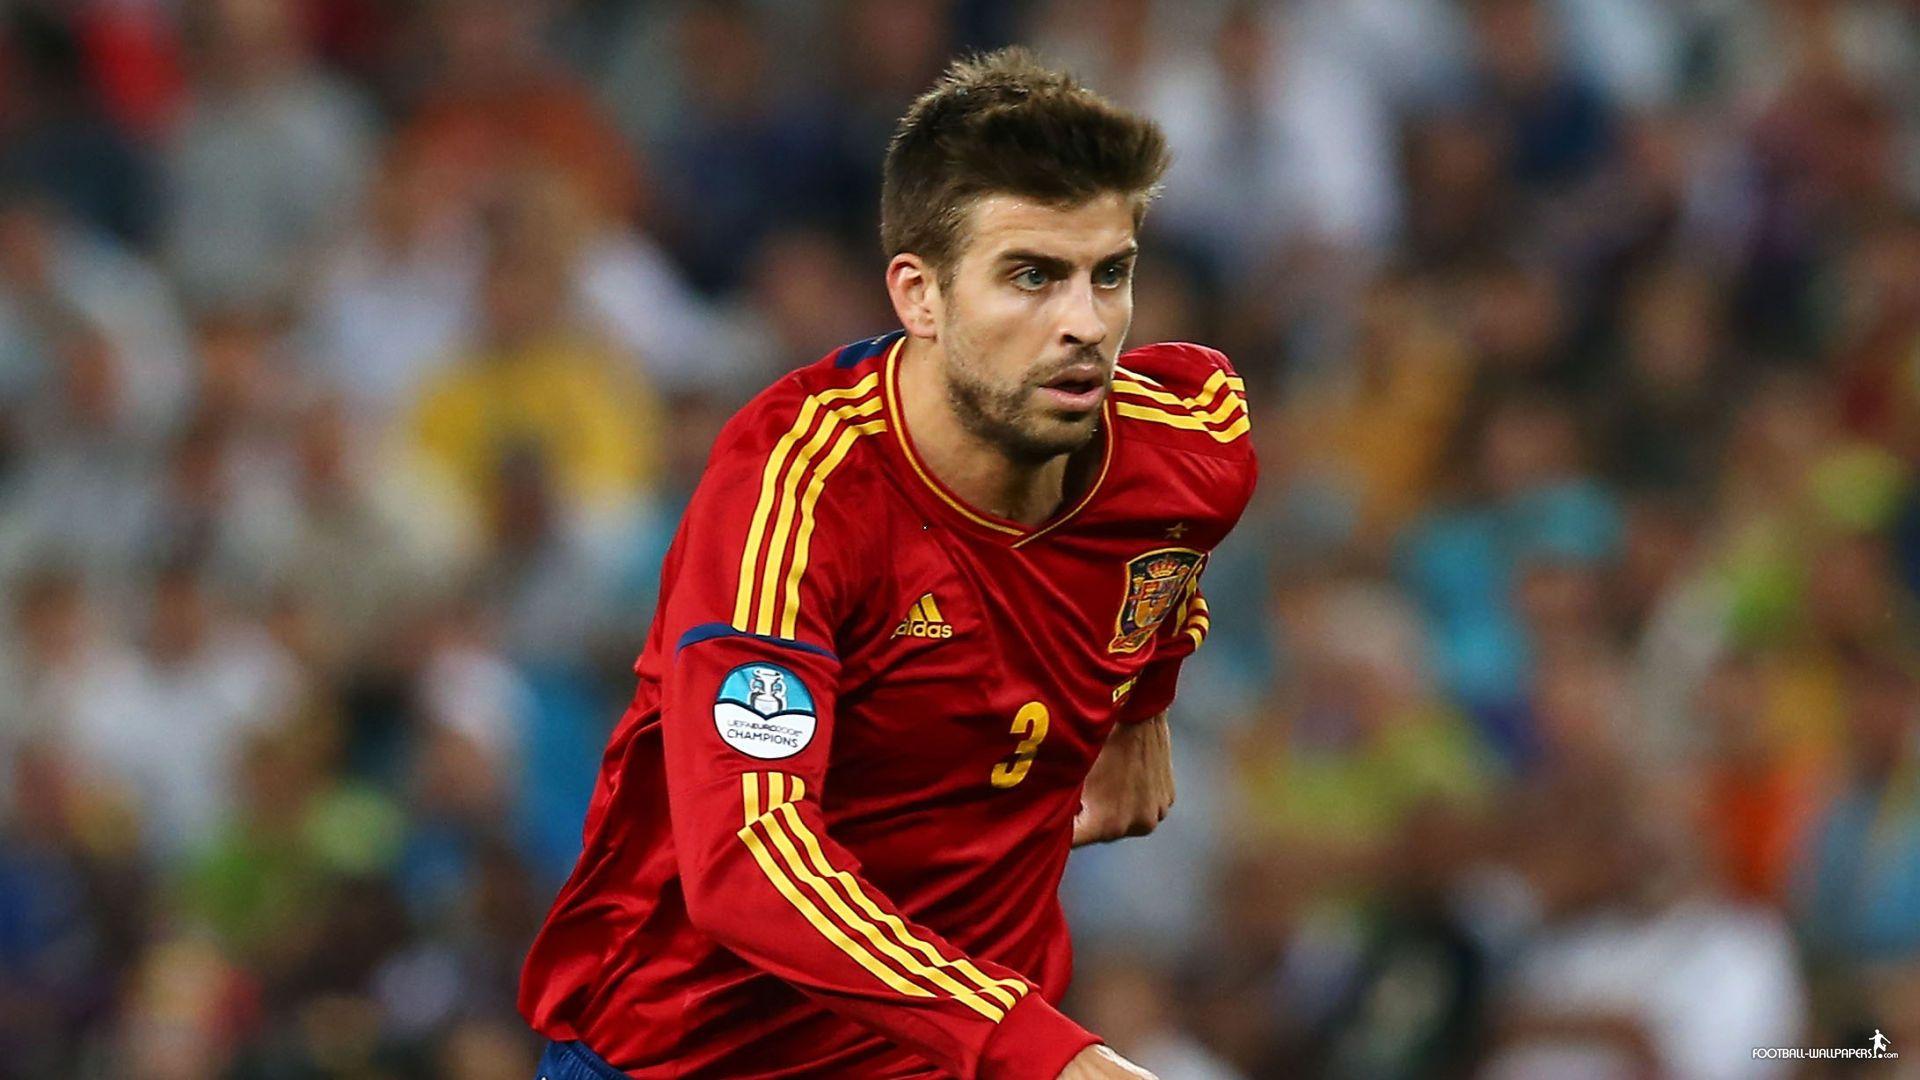 Spain National Team Gerard Pique Widescreen Wallpaper: Players